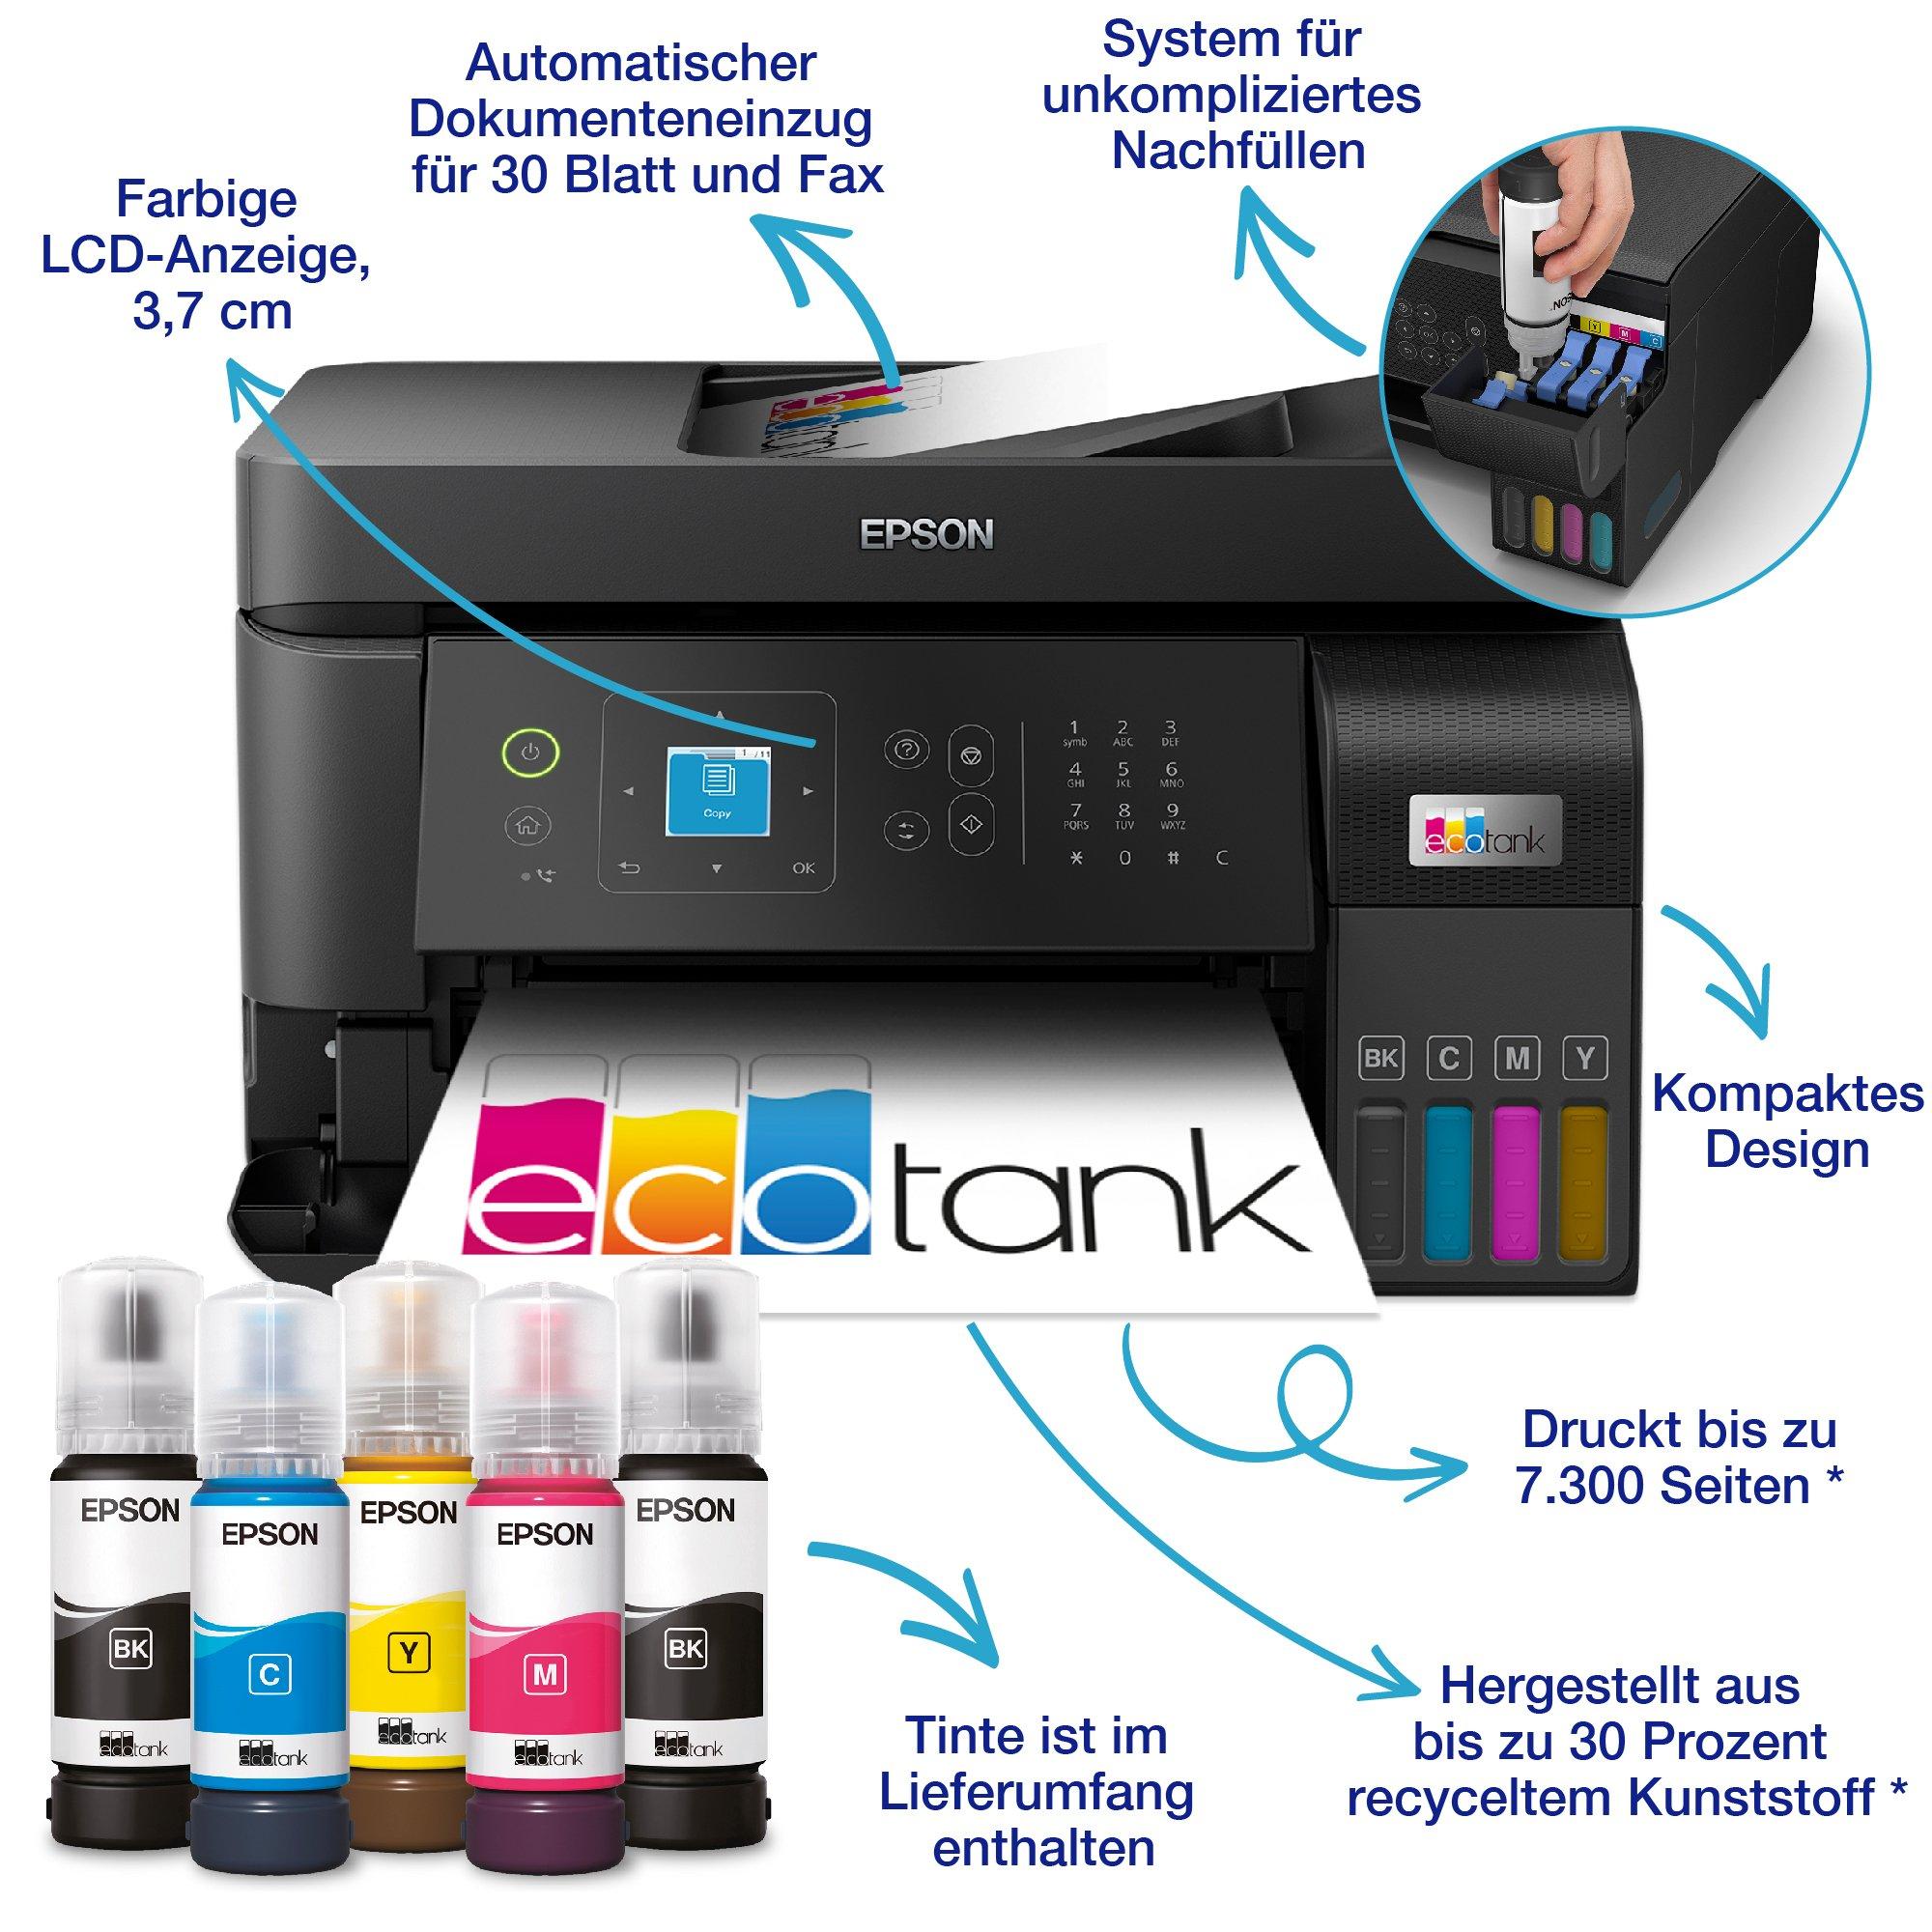 EcoTank ET-4810 | Consumer | Tintenstrahldrucker | Drucker | Produkte |  Epson Deutschland